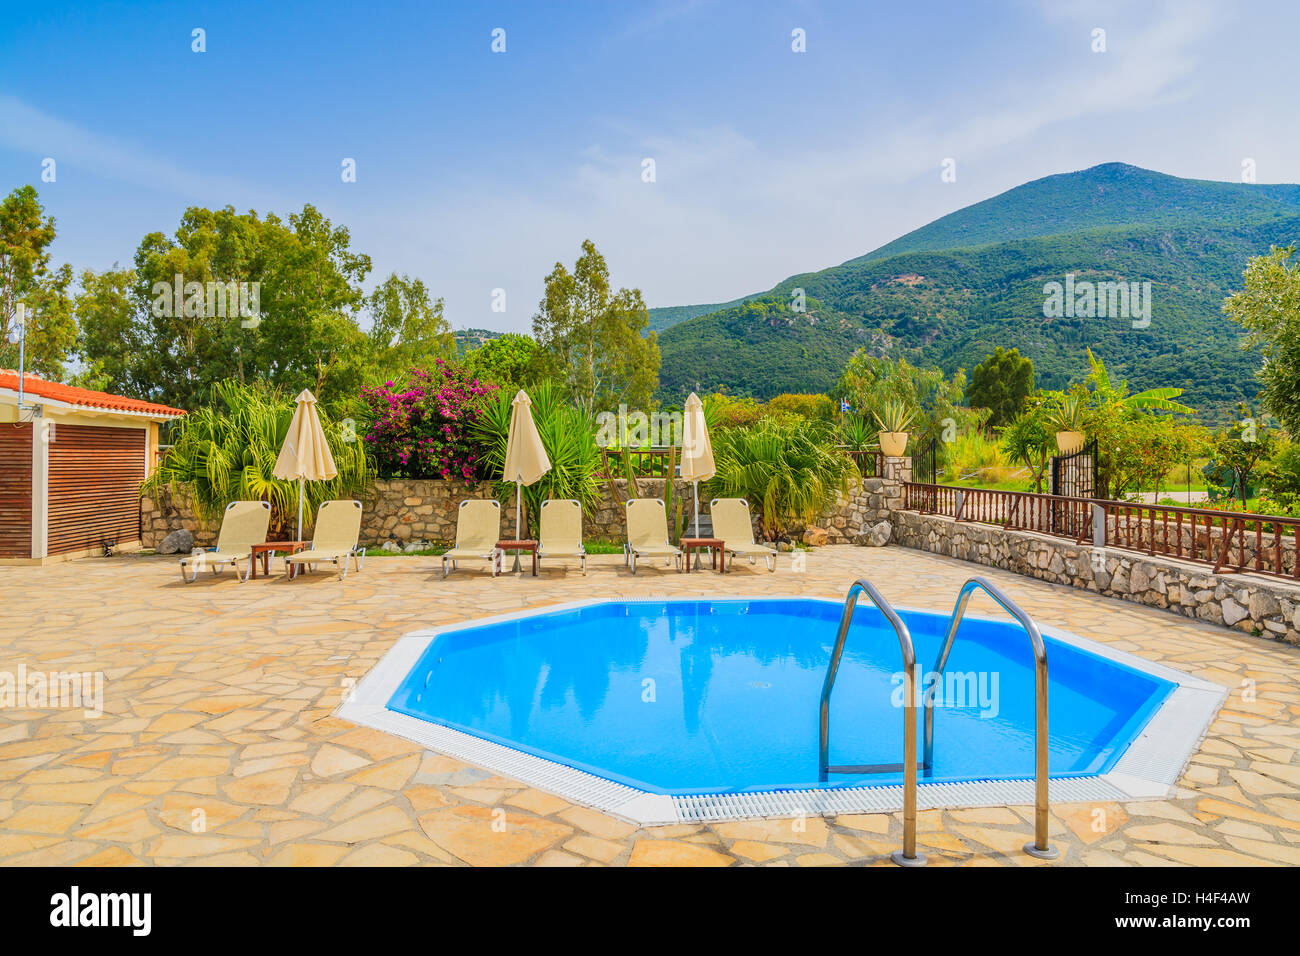 Petite piscine avec transats dans paysage de montagnes de l'île de Céphalonie, Grèce Banque D'Images